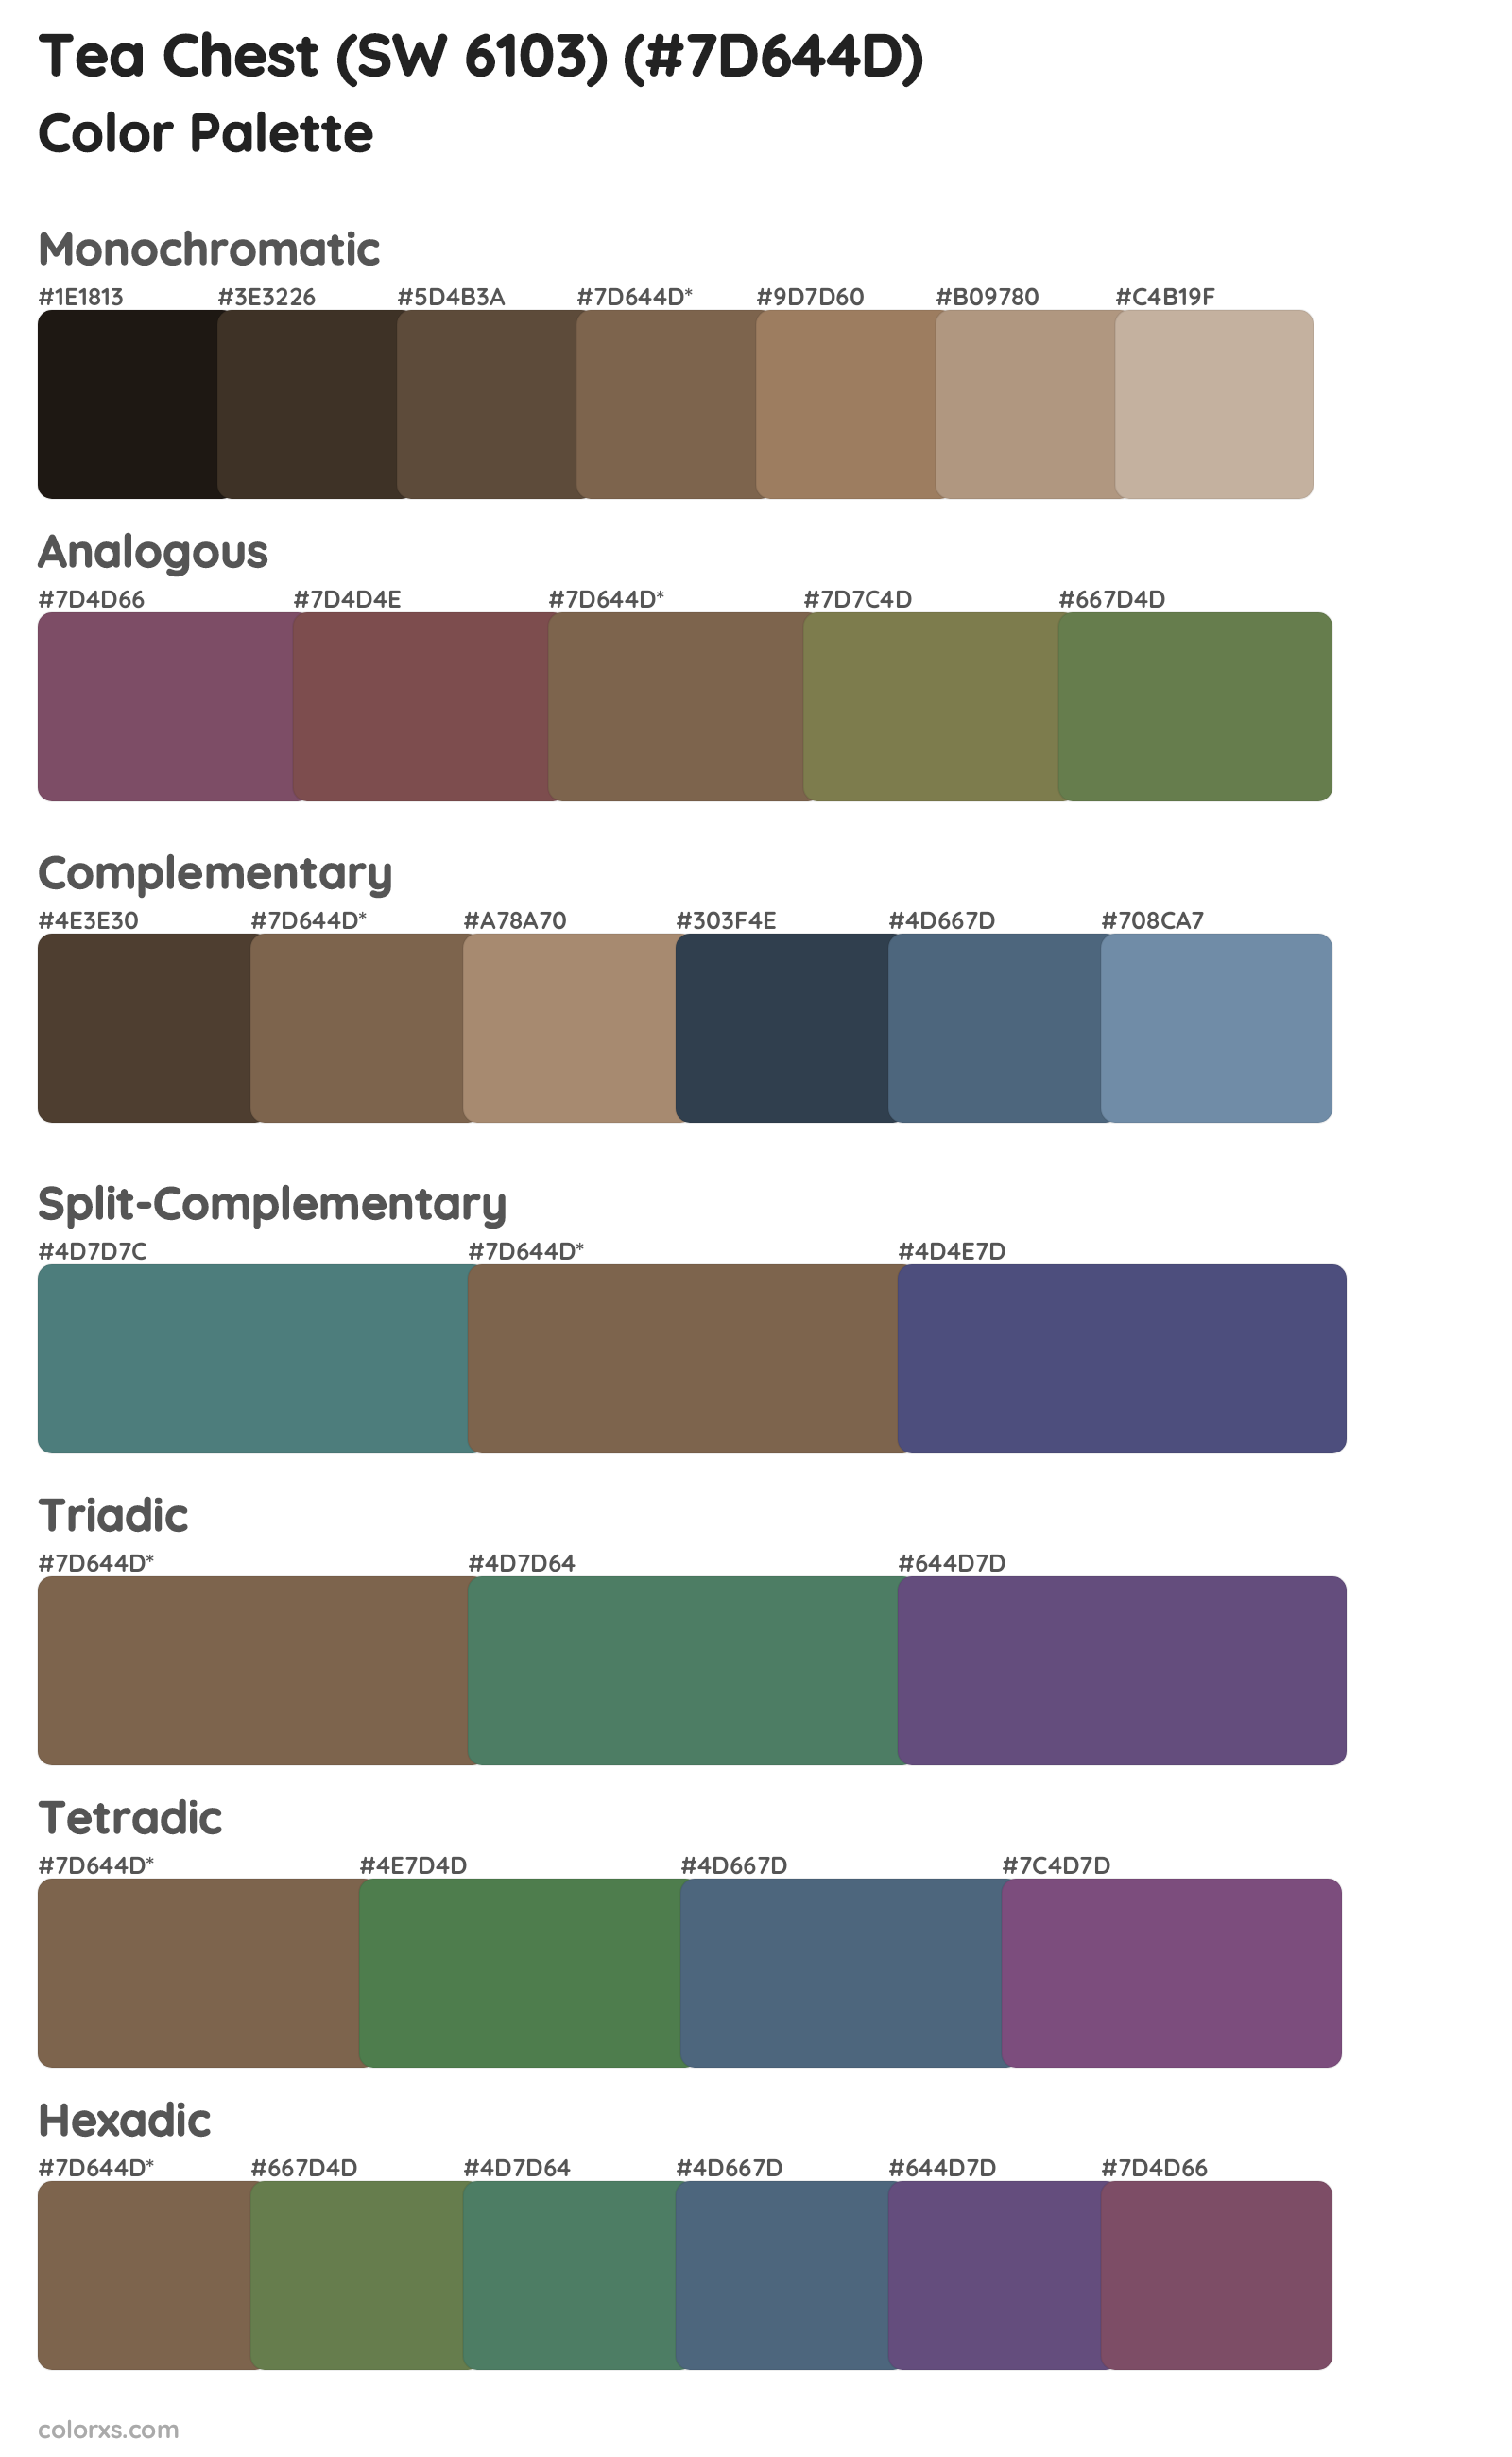 Tea Chest (SW 6103) Color Scheme Palettes